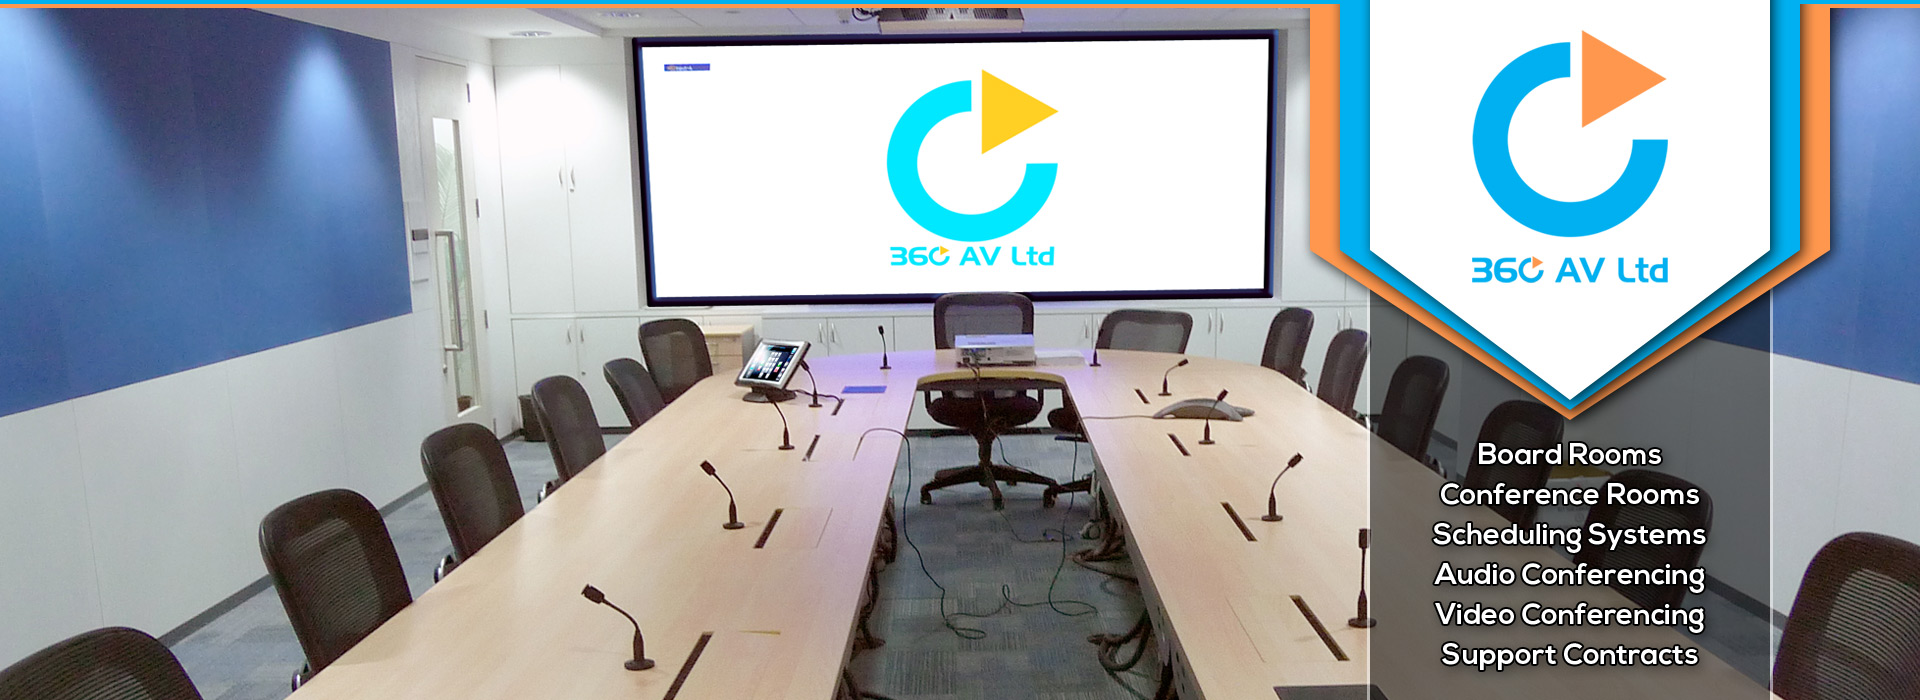 360 AV Ltd | Corporate AV Boardroom